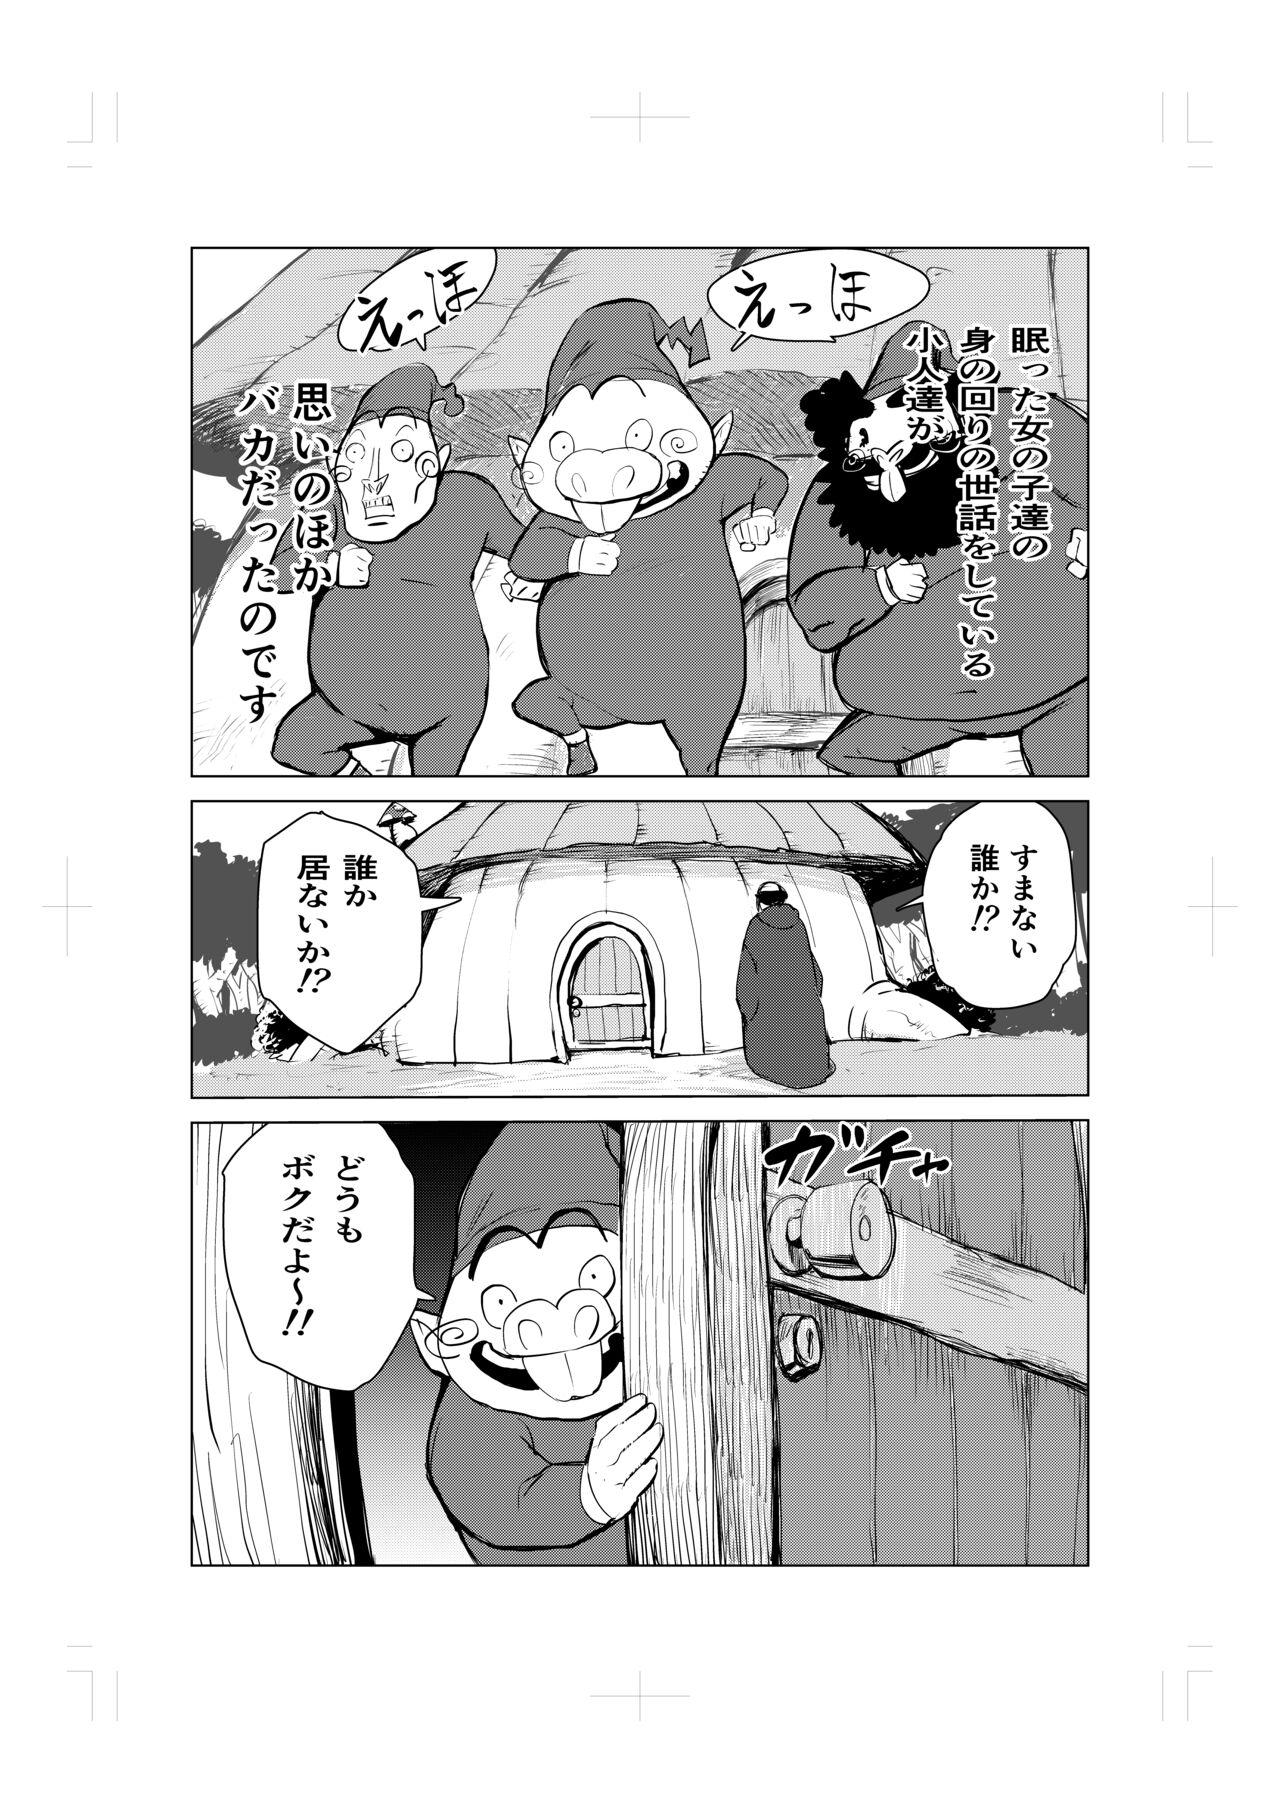 Strapon Nemuri hime no ketsu ana ne bakku monogatari - Original Pierced - Page 4